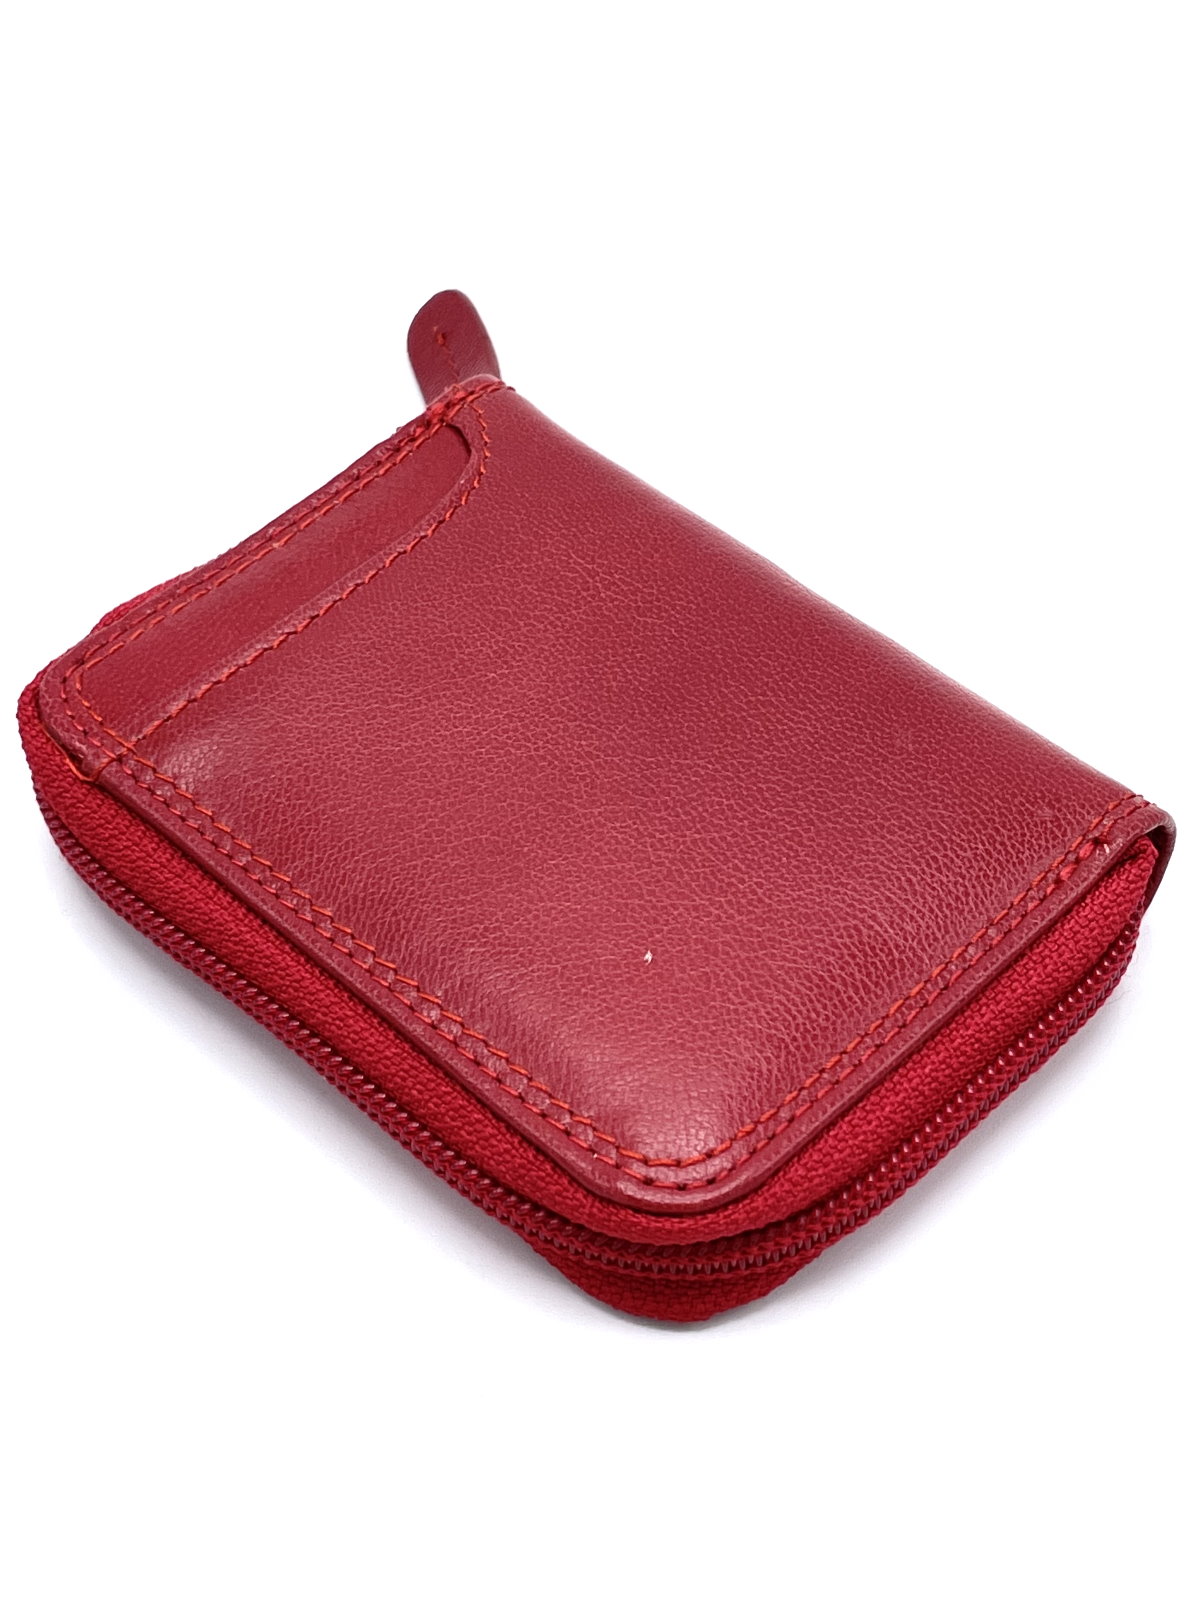 Emilie M Genuine Leather Purse Shoulder/ Hand Bag Brand NEW! | eBay